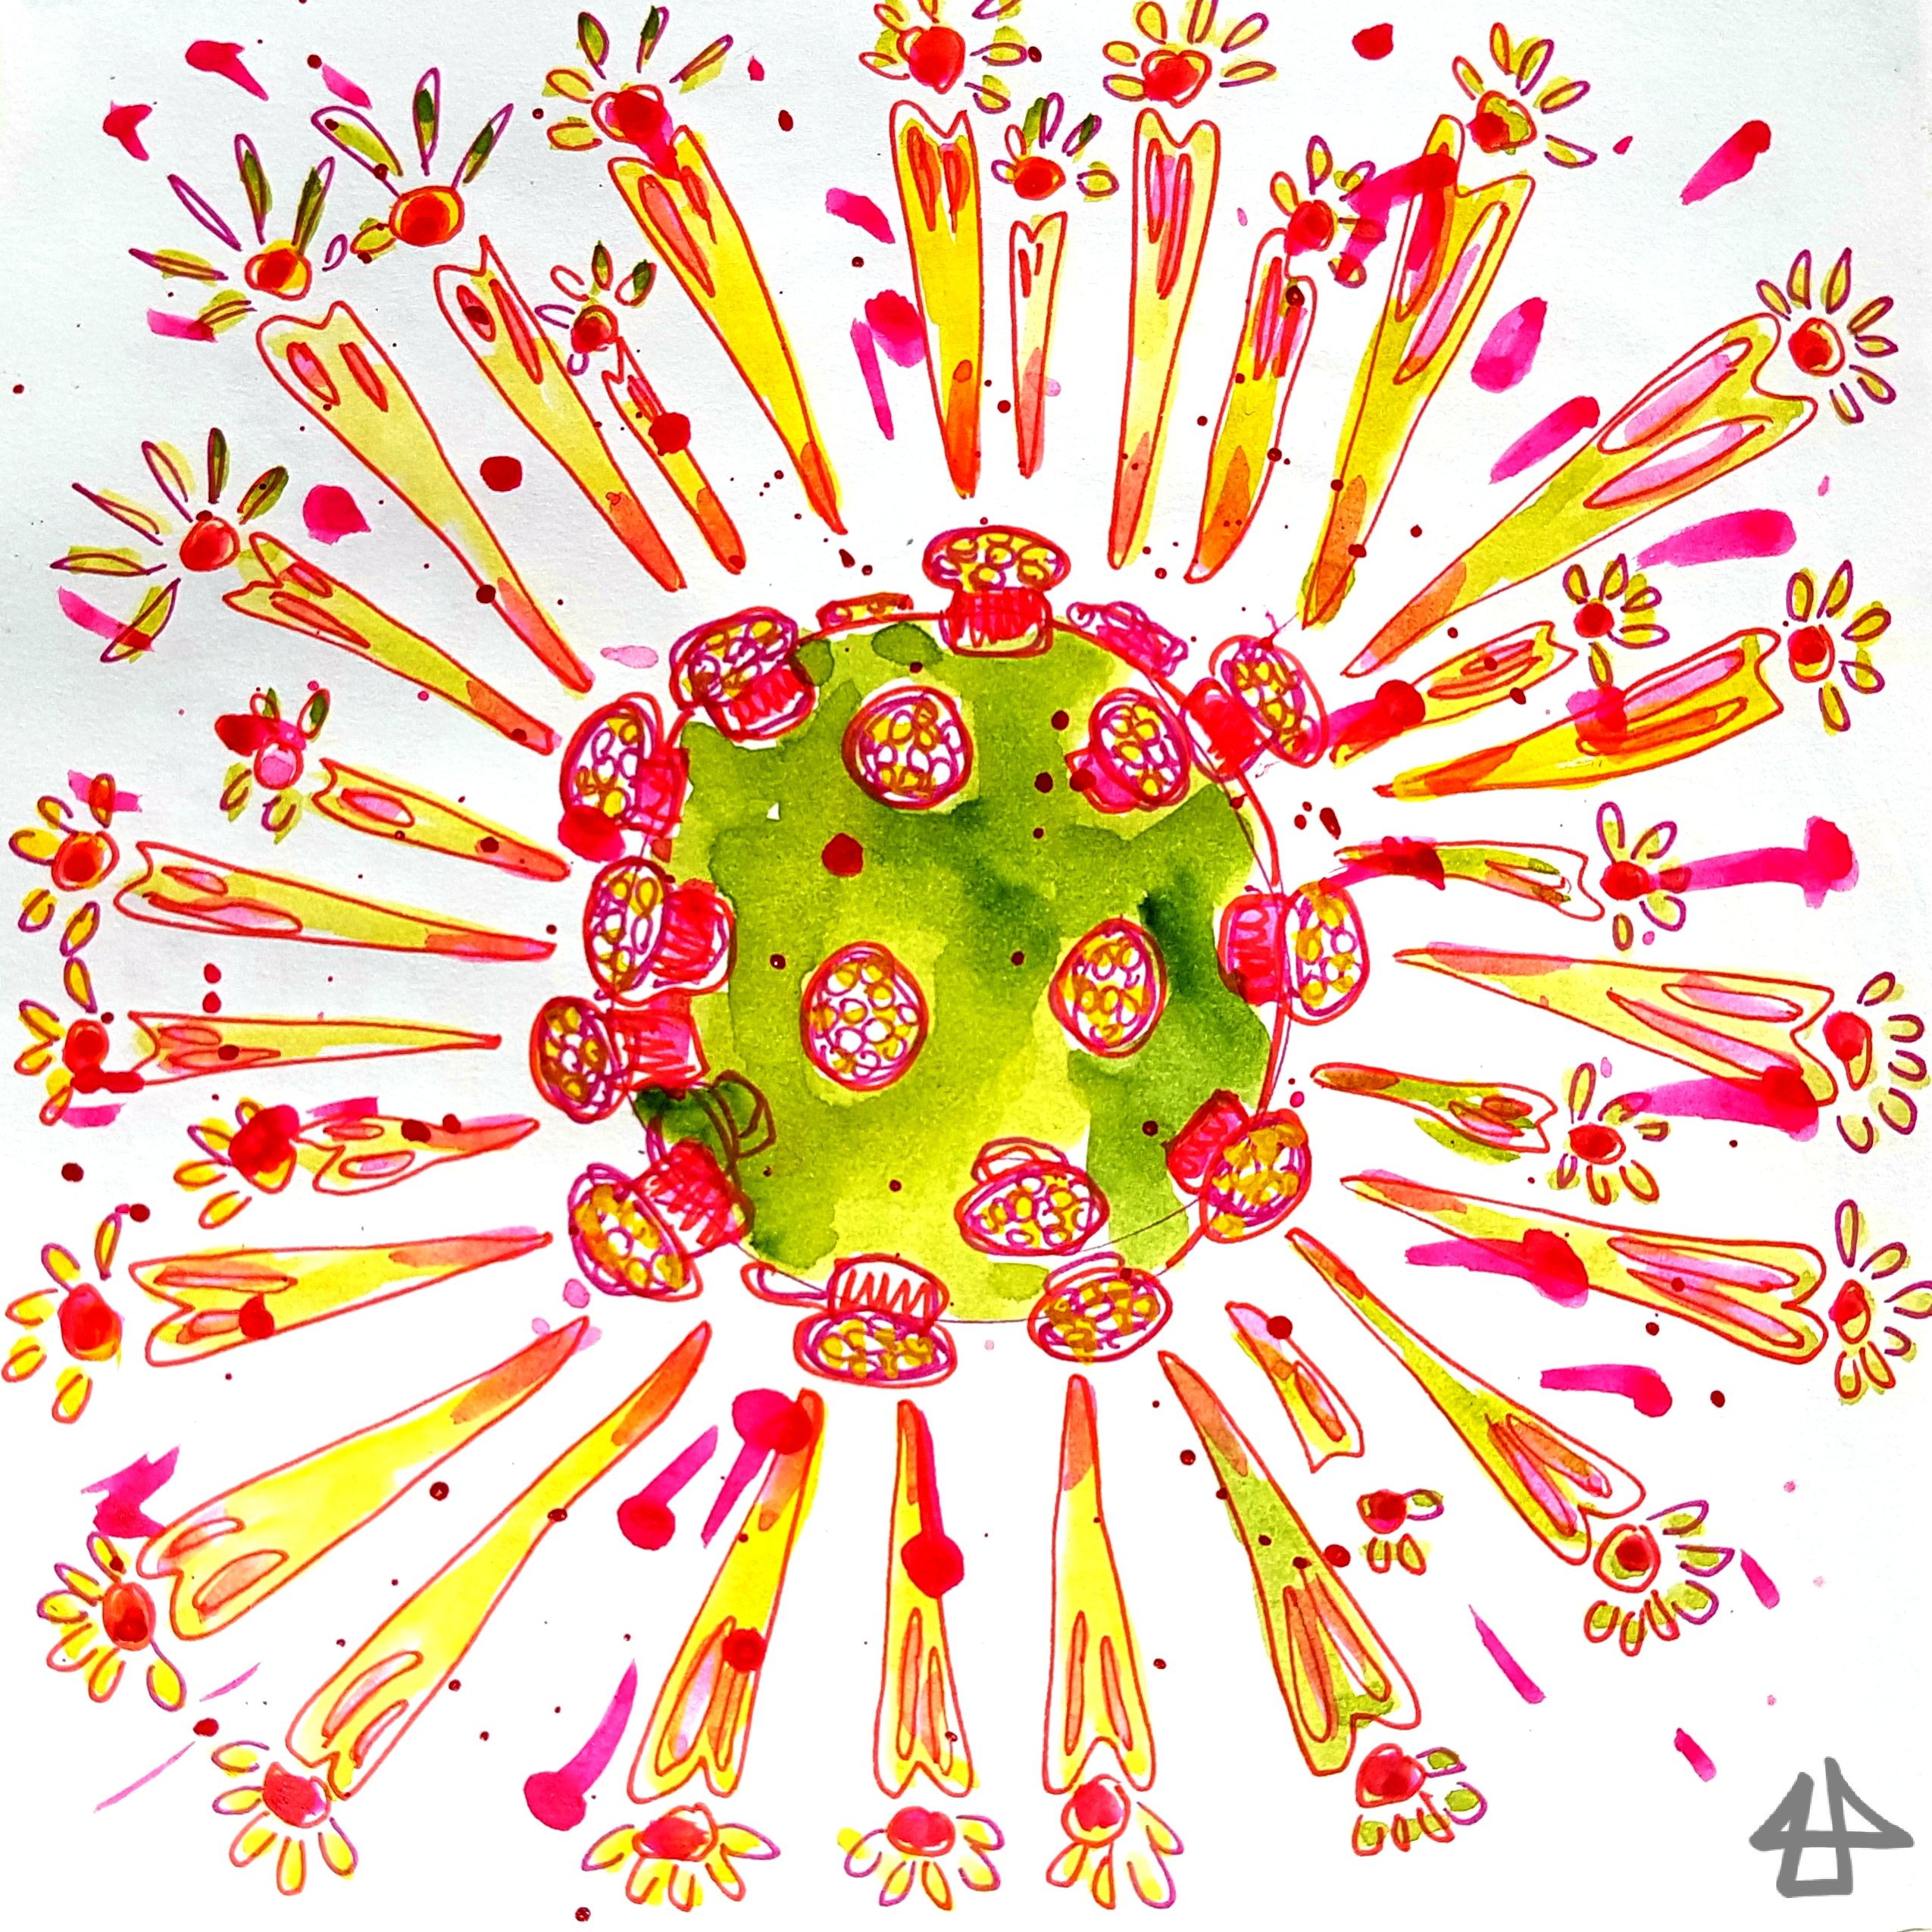 Aquarellierte Finelinerzeichnung eines stilisierten Coronavirus in gelb, pink und grasgrün.